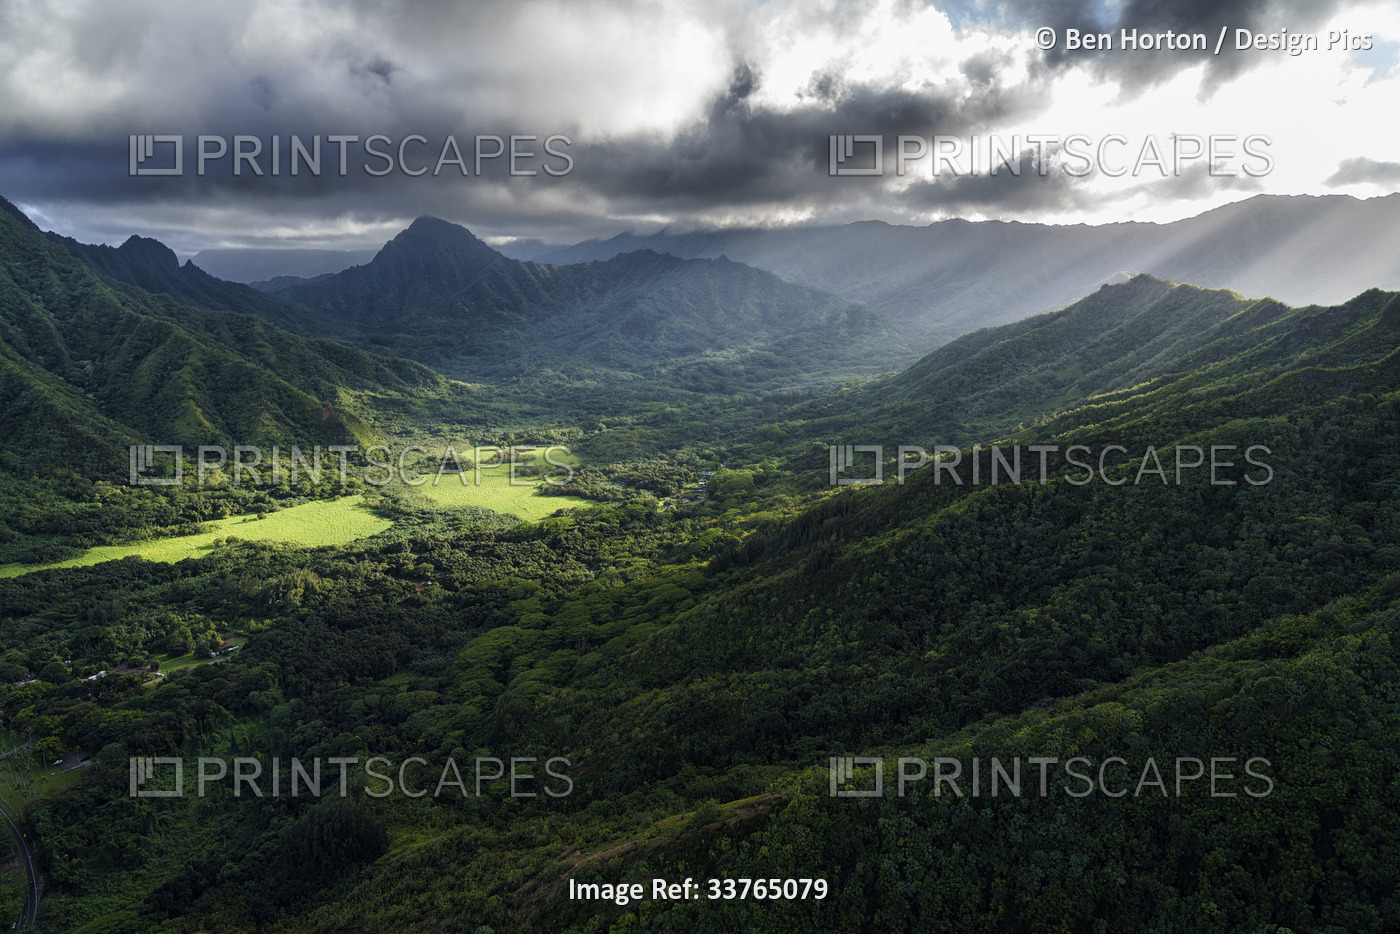 Lush vegetation over a mountainous landscape